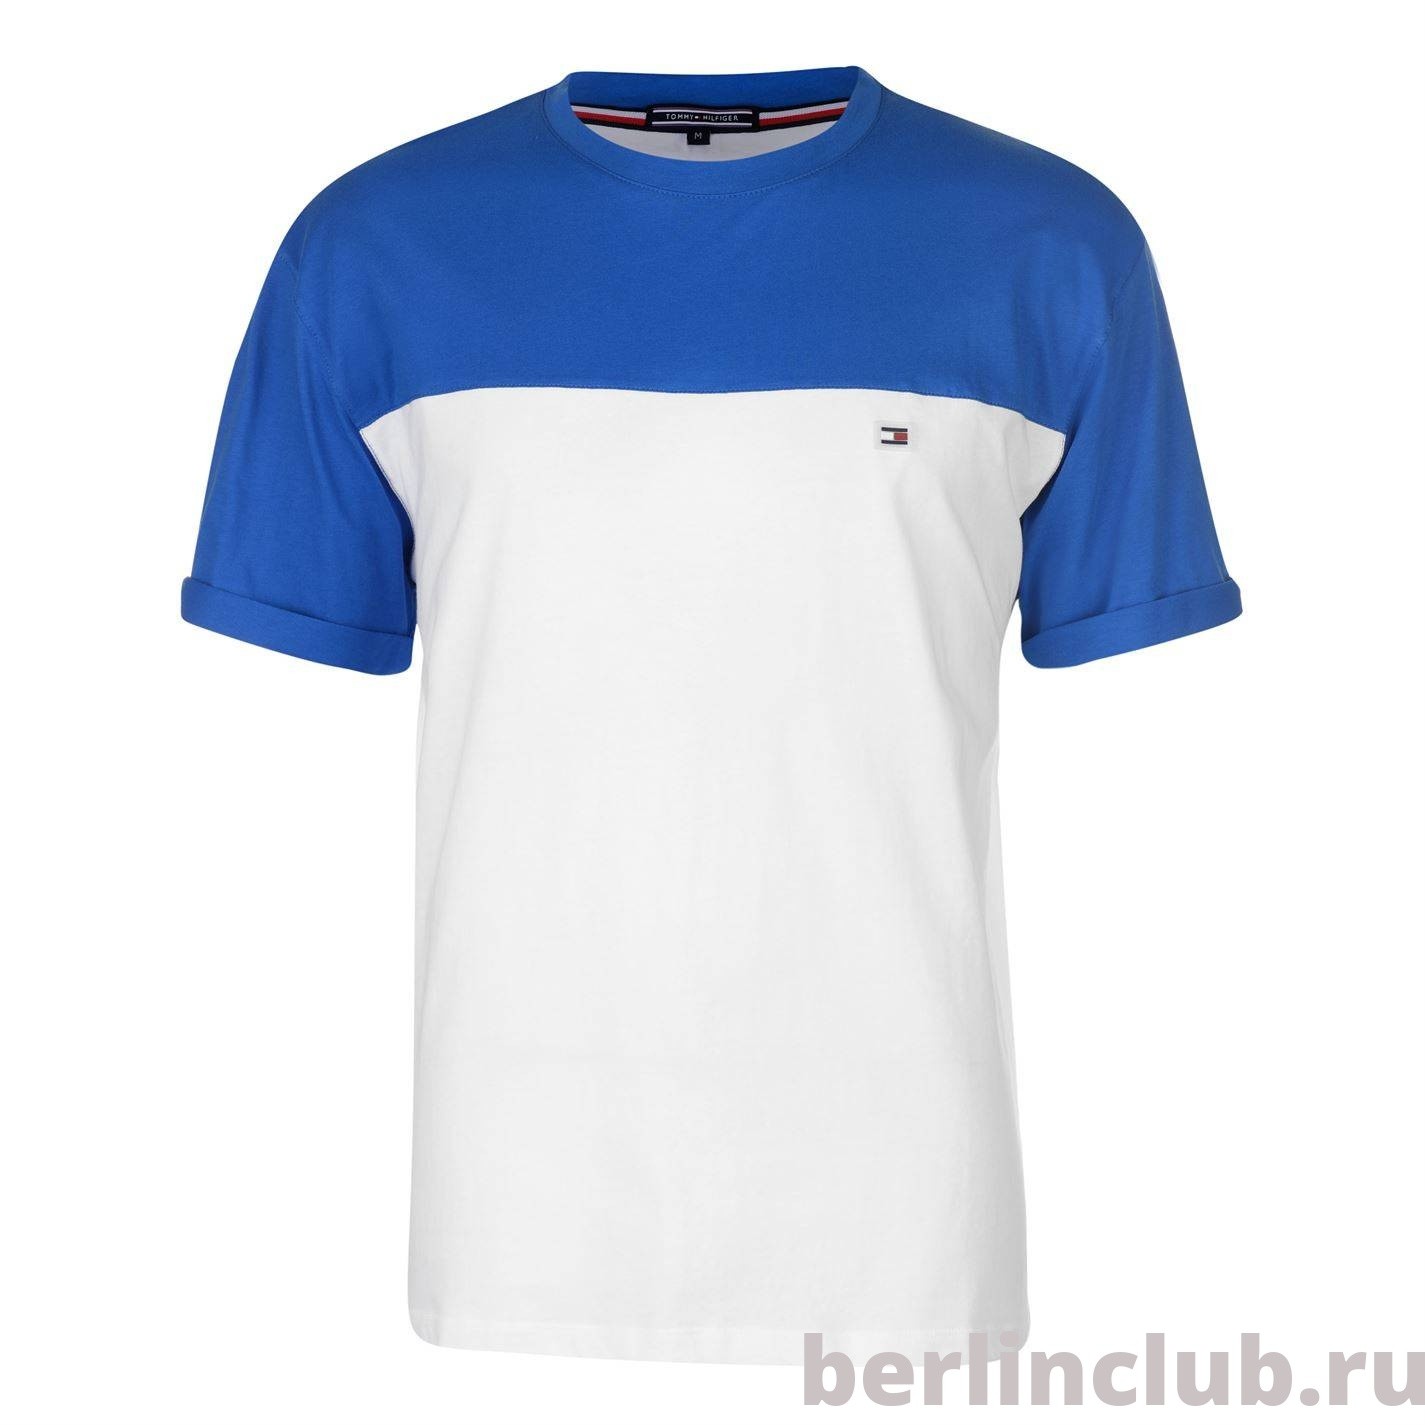 Мужская футболка Tommy Hilfiger колорблок синий-белый - купить с доставкой по России, оплата при получении